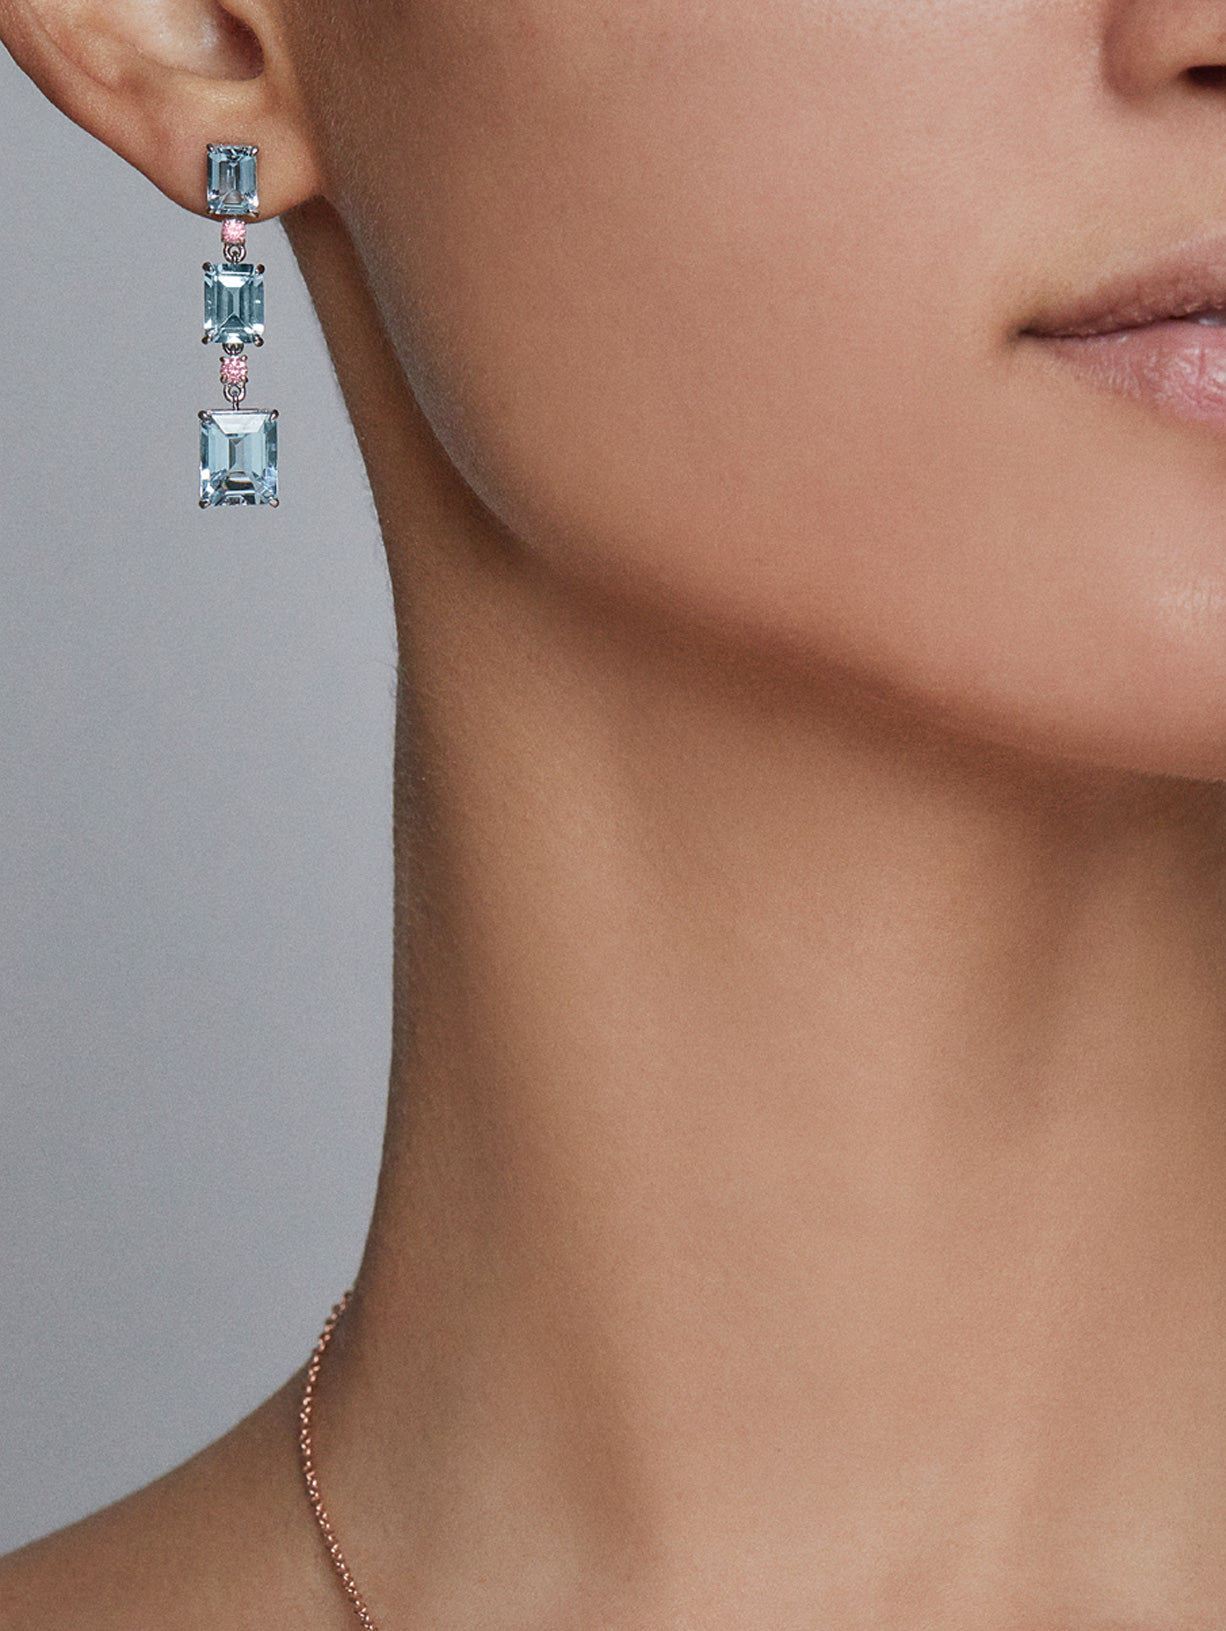 Argyle Pink™ Diamond and Aquamarine 3 Station Drop Earrings - Pink Diamonds, J FINE - J Fine, earrings - Pink Diamond Jewelry, j-fine-aquamarine-3-station-drop-earrings - Argyle Pink Diamon